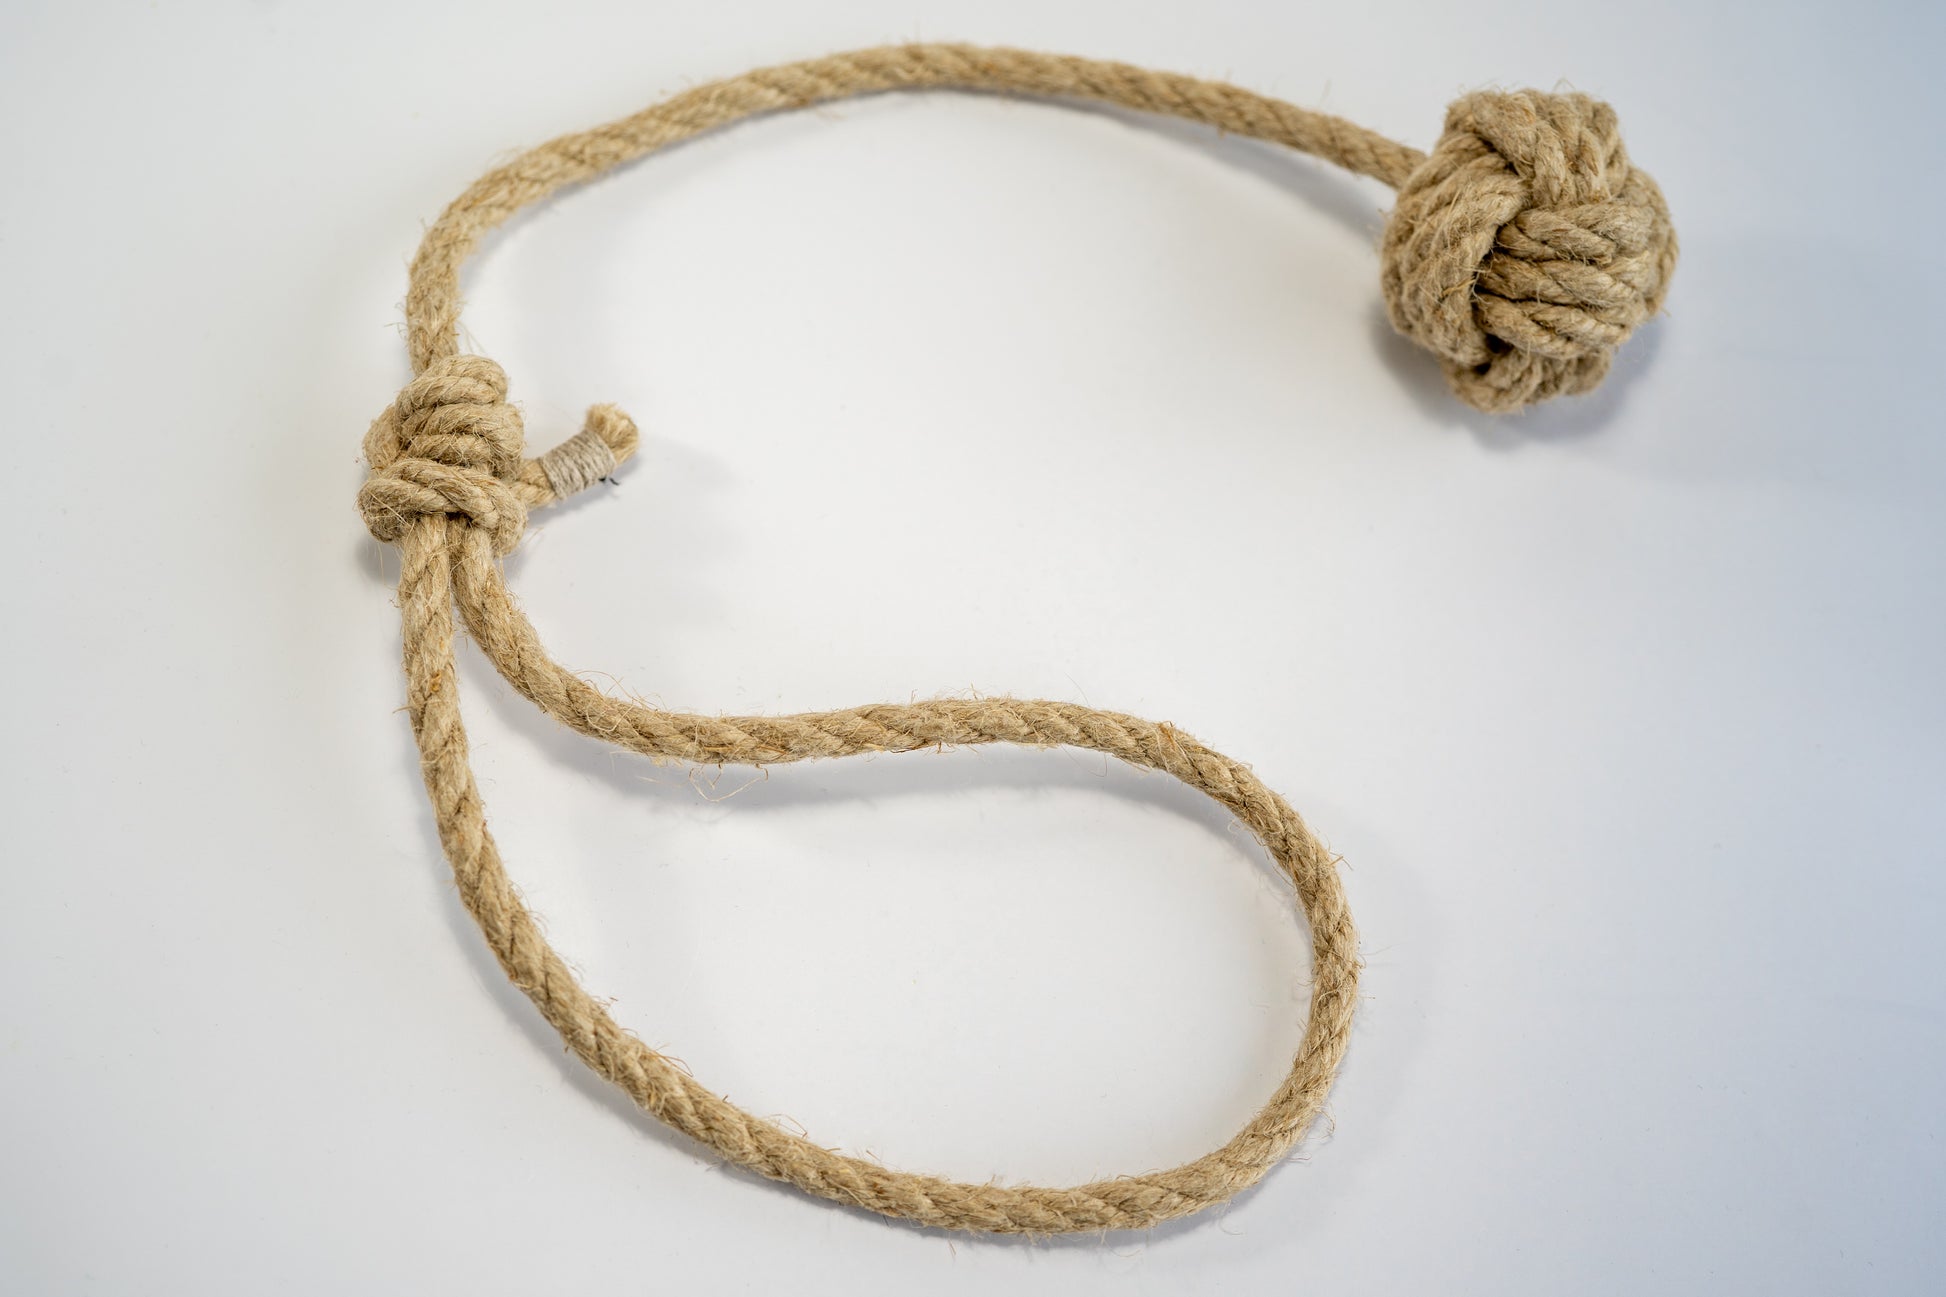 Hemp rope with small monkey fist for dogs. | Corde de chanvre avec poing de singe de petite taille pour chiens.